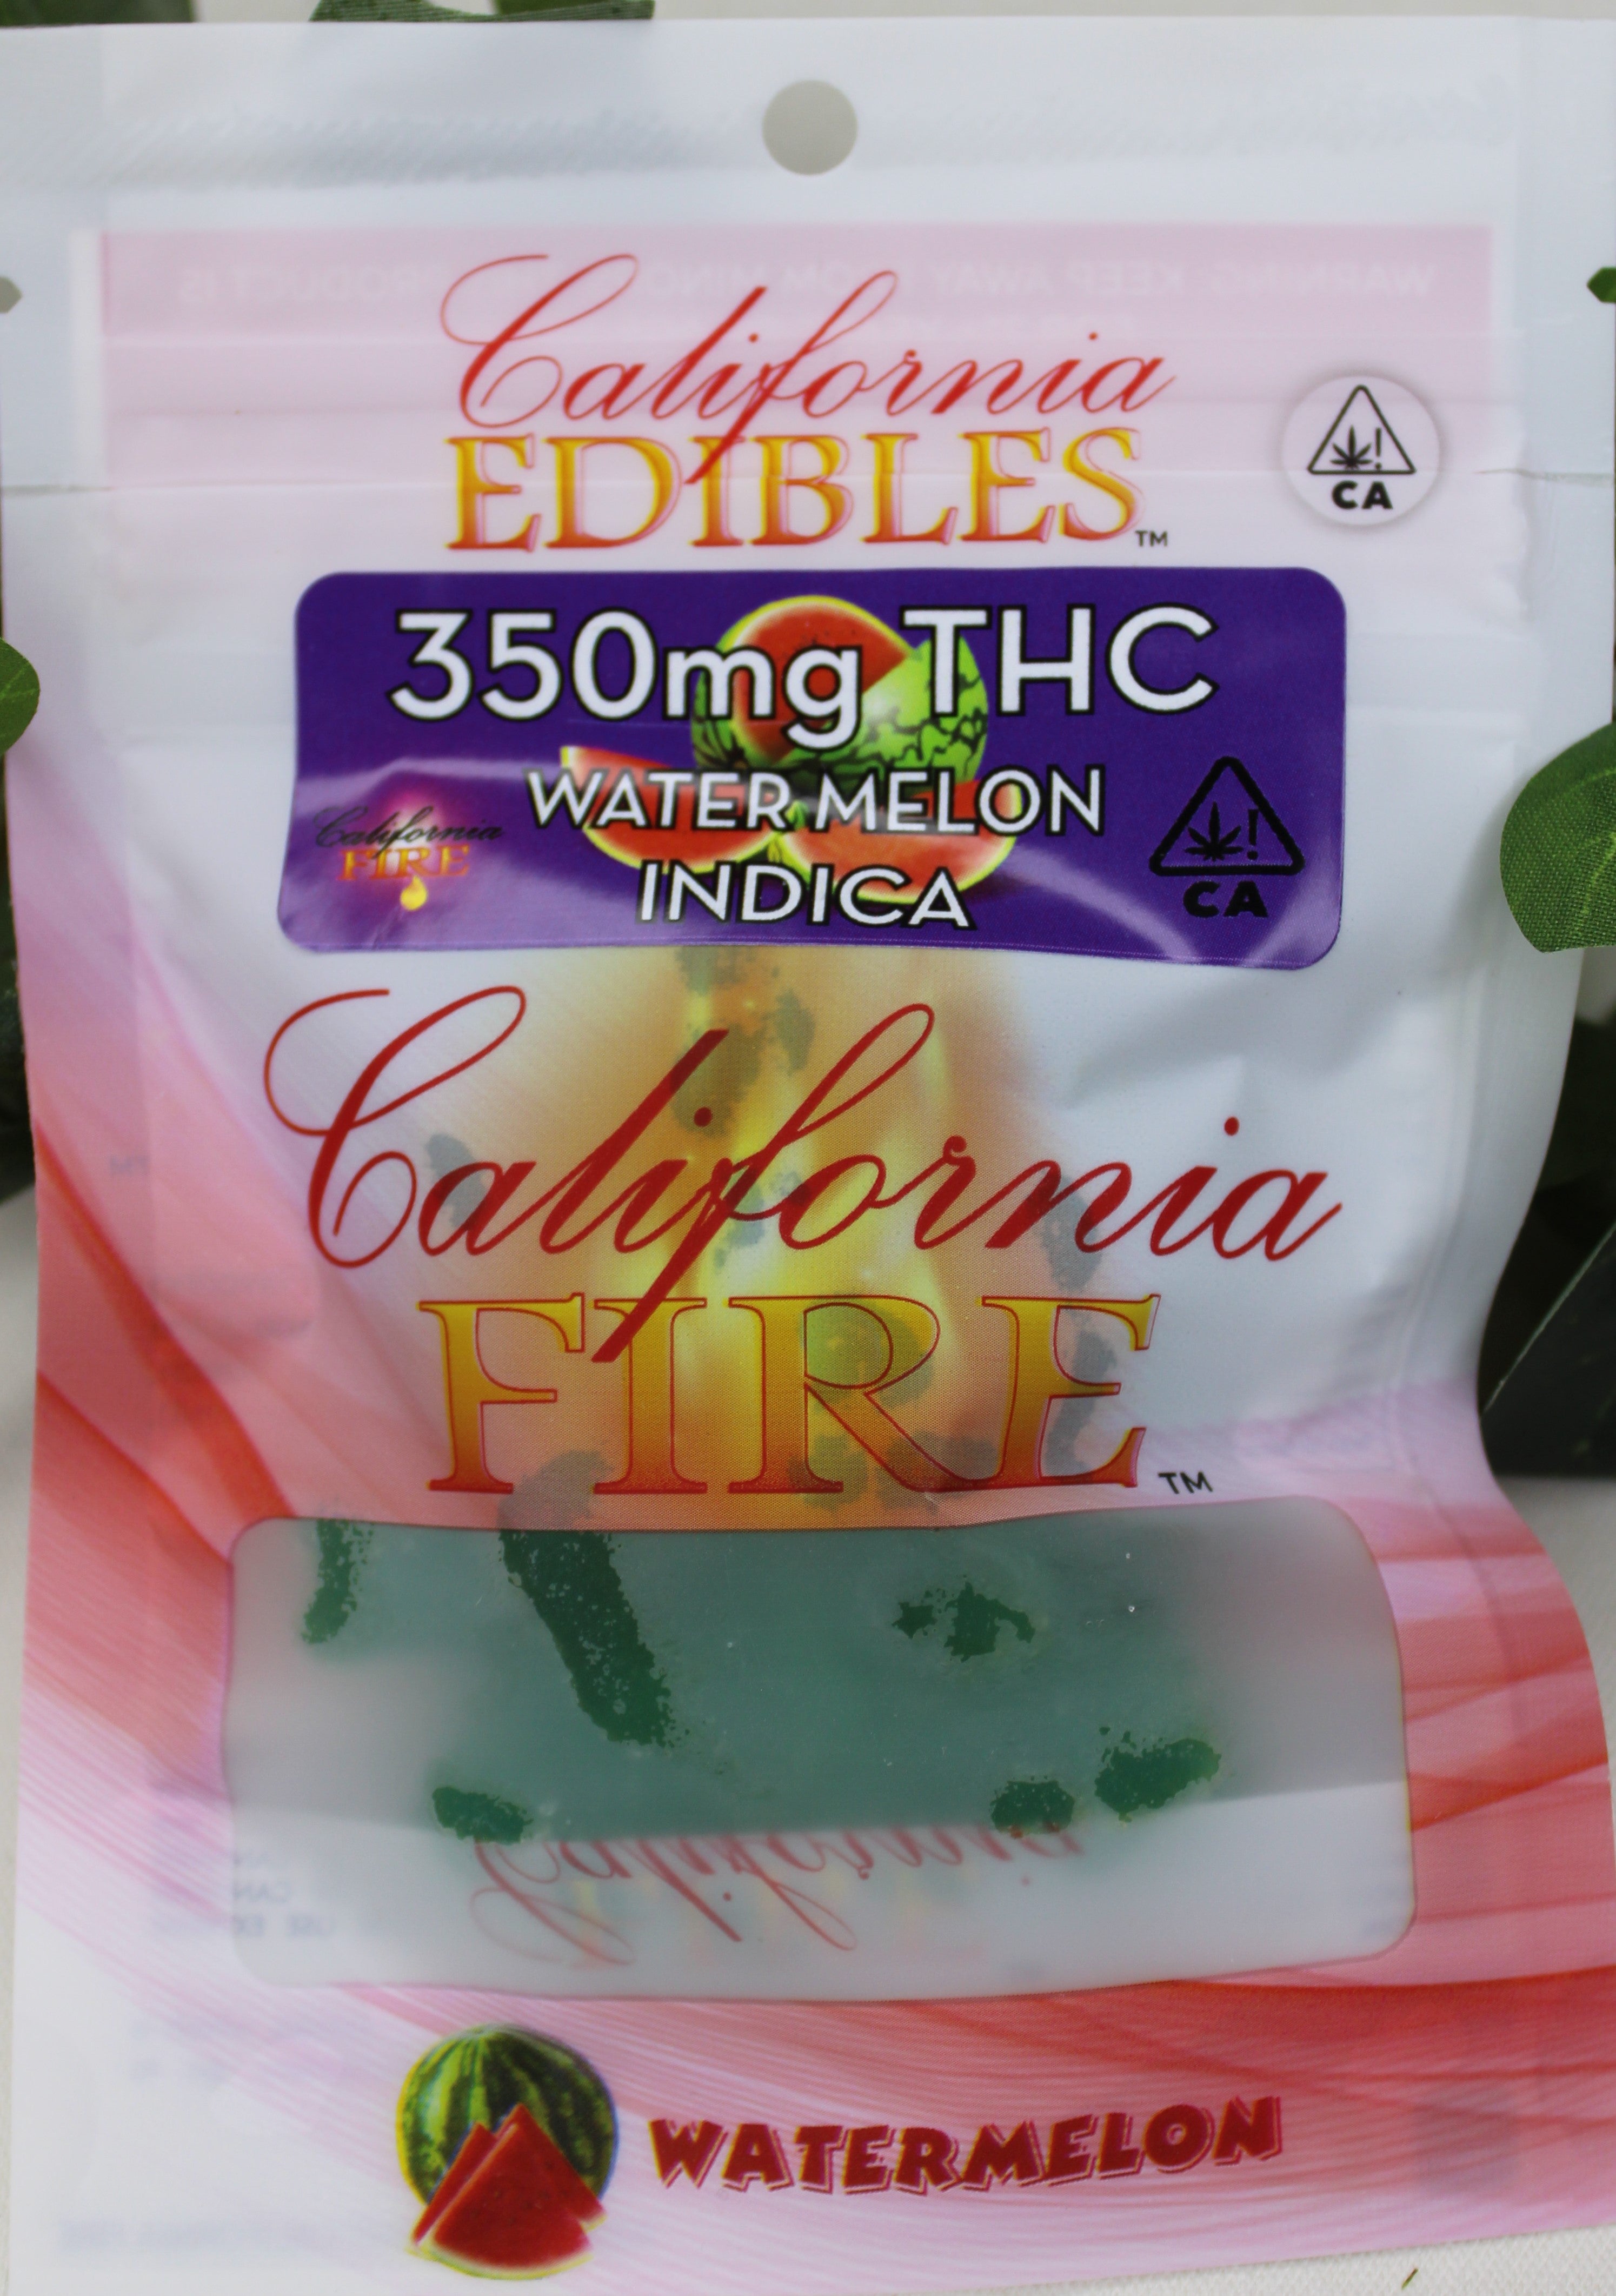 California Fire 350mg "Watermelon" THC Edible